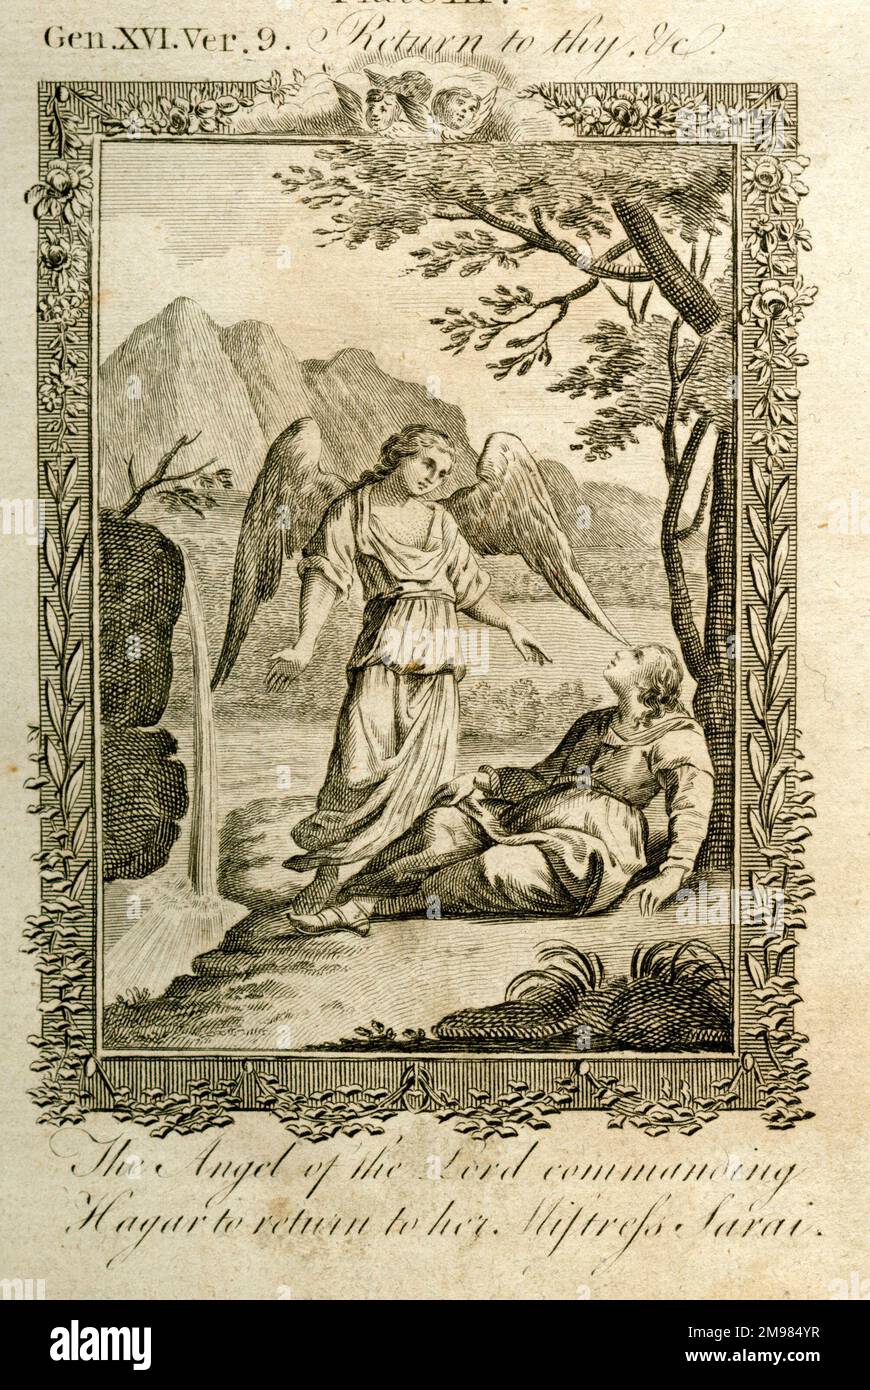 Der Engel des Herrn befiehlt Hagar, zu ihrer Geliebten Sarah zurückzukehren - Thomas Bankes Bibel, Genesis 16,9. Stockfoto